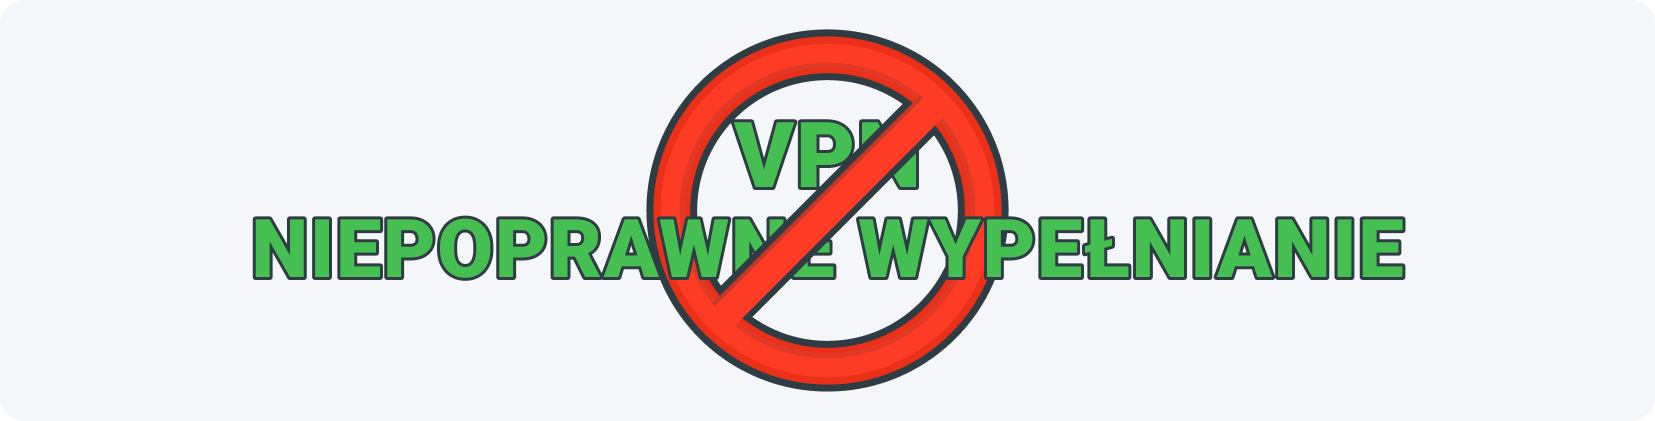 Stosowanie VPN i niepoprawne wypełnienie to główne powody blokad ankiet.